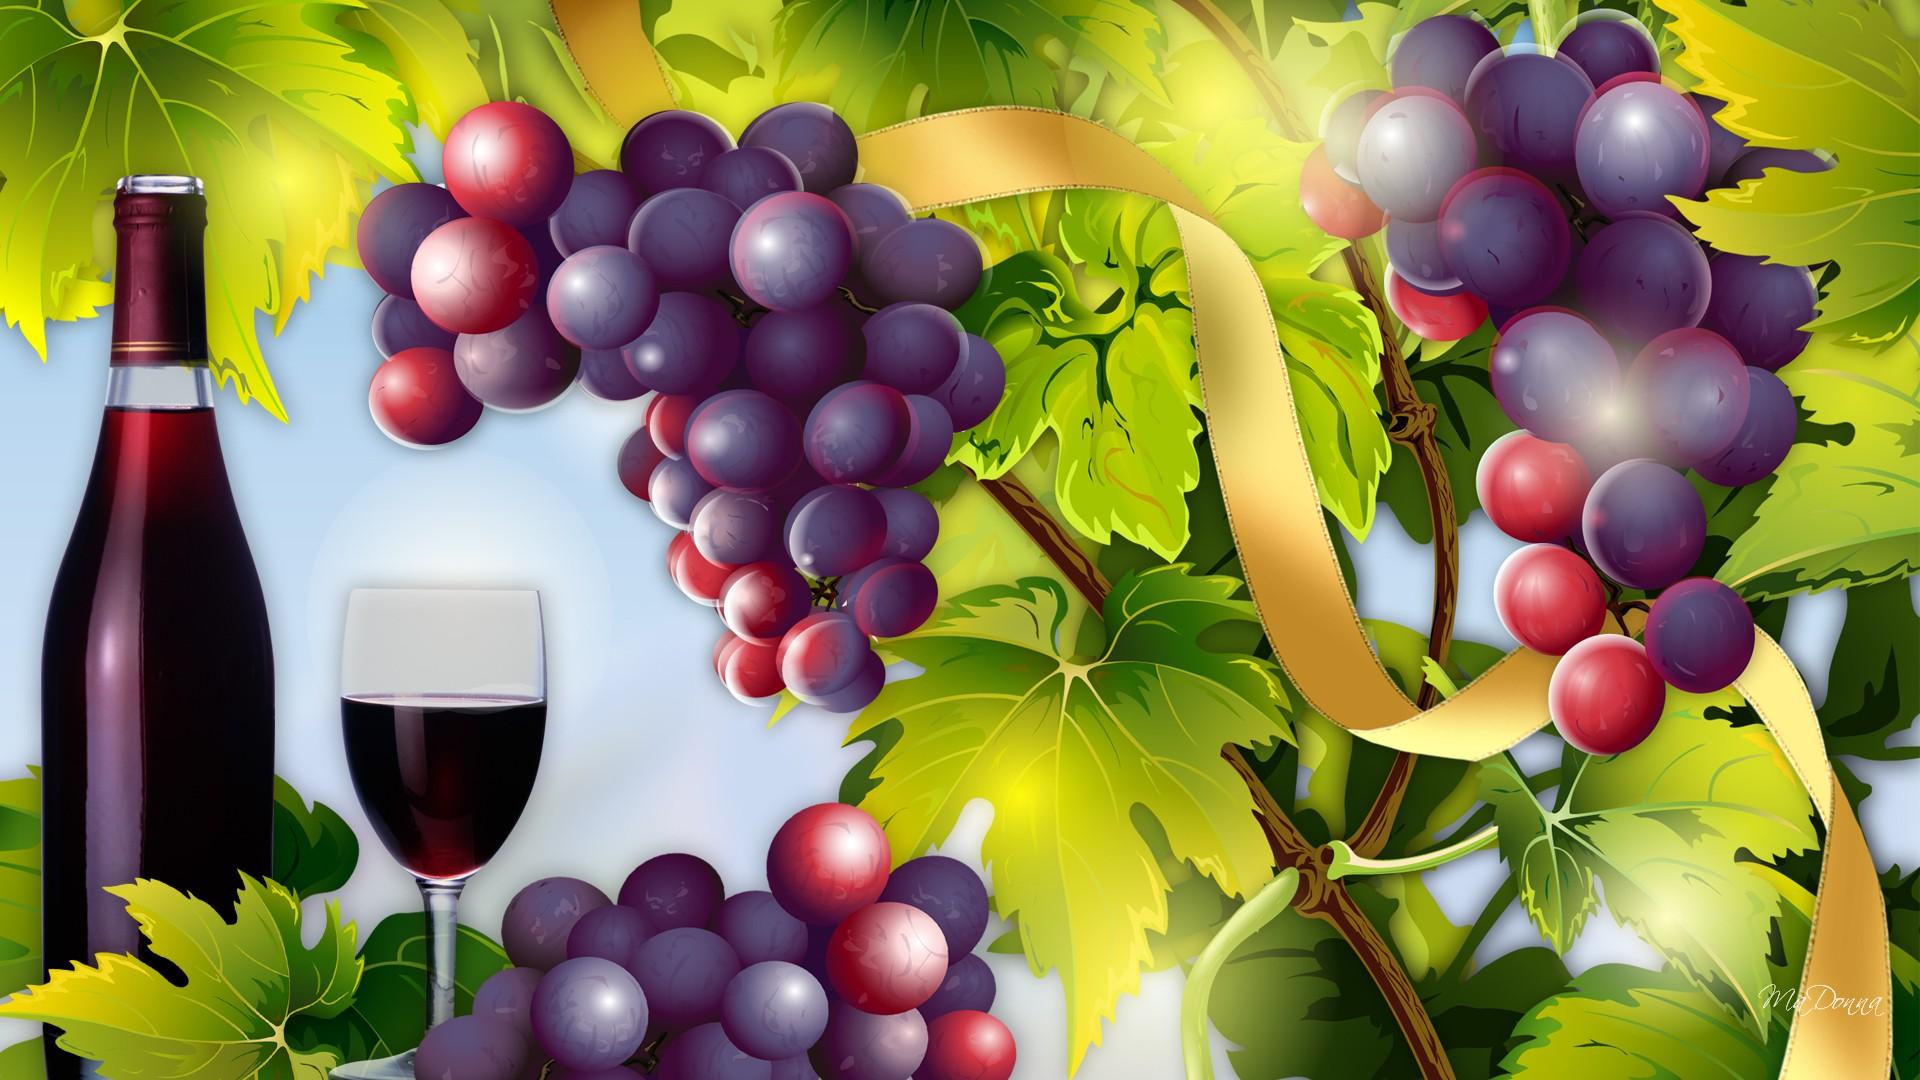 44+] Wine and Grapes Wallpaper - WallpaperSafari